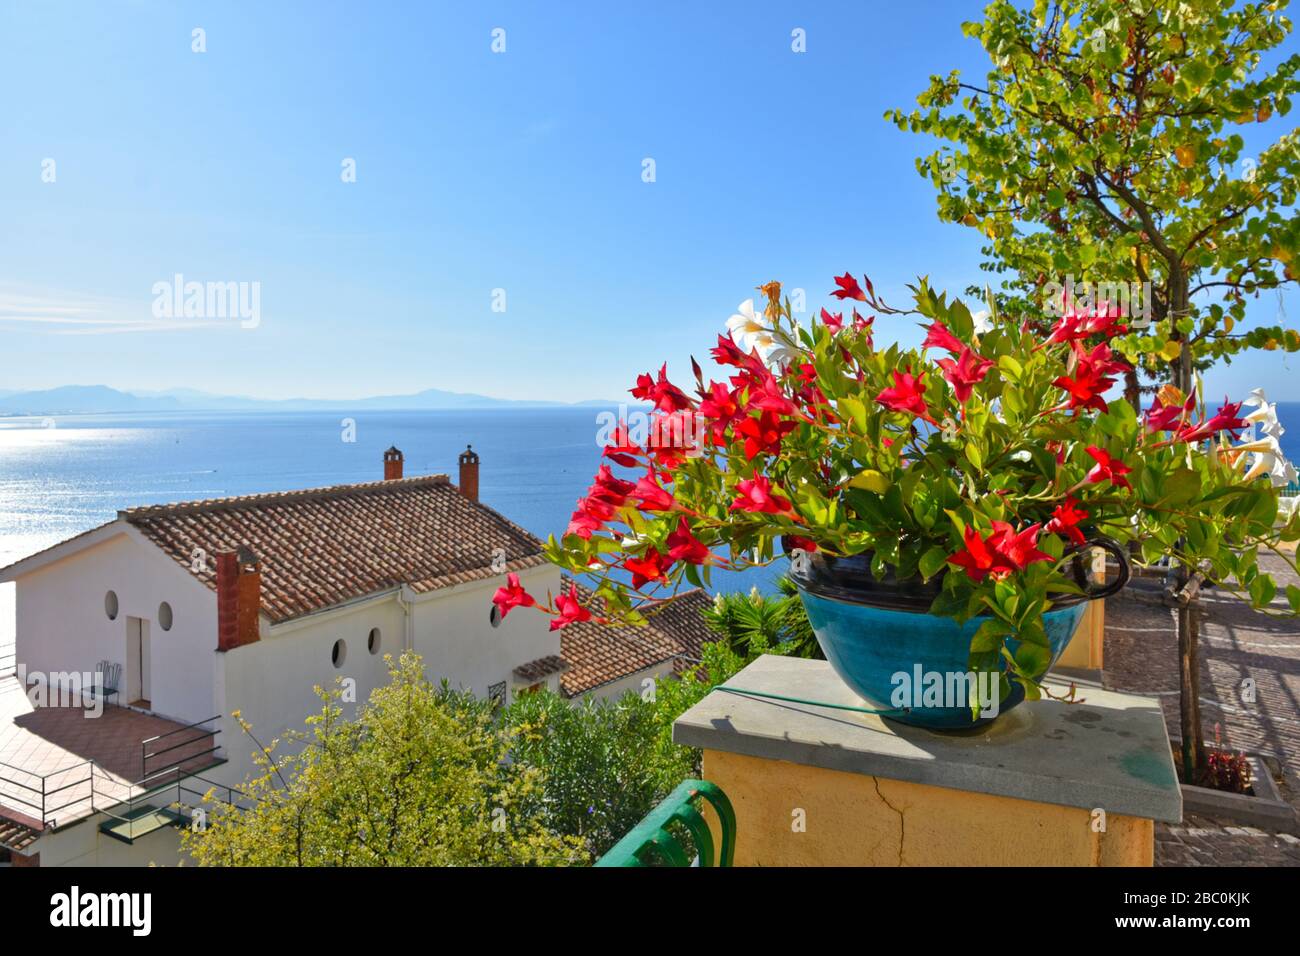 Vue panoramique sur la mer depuis Raito, un village de la côte amalfitaine en Italie Banque D'Images